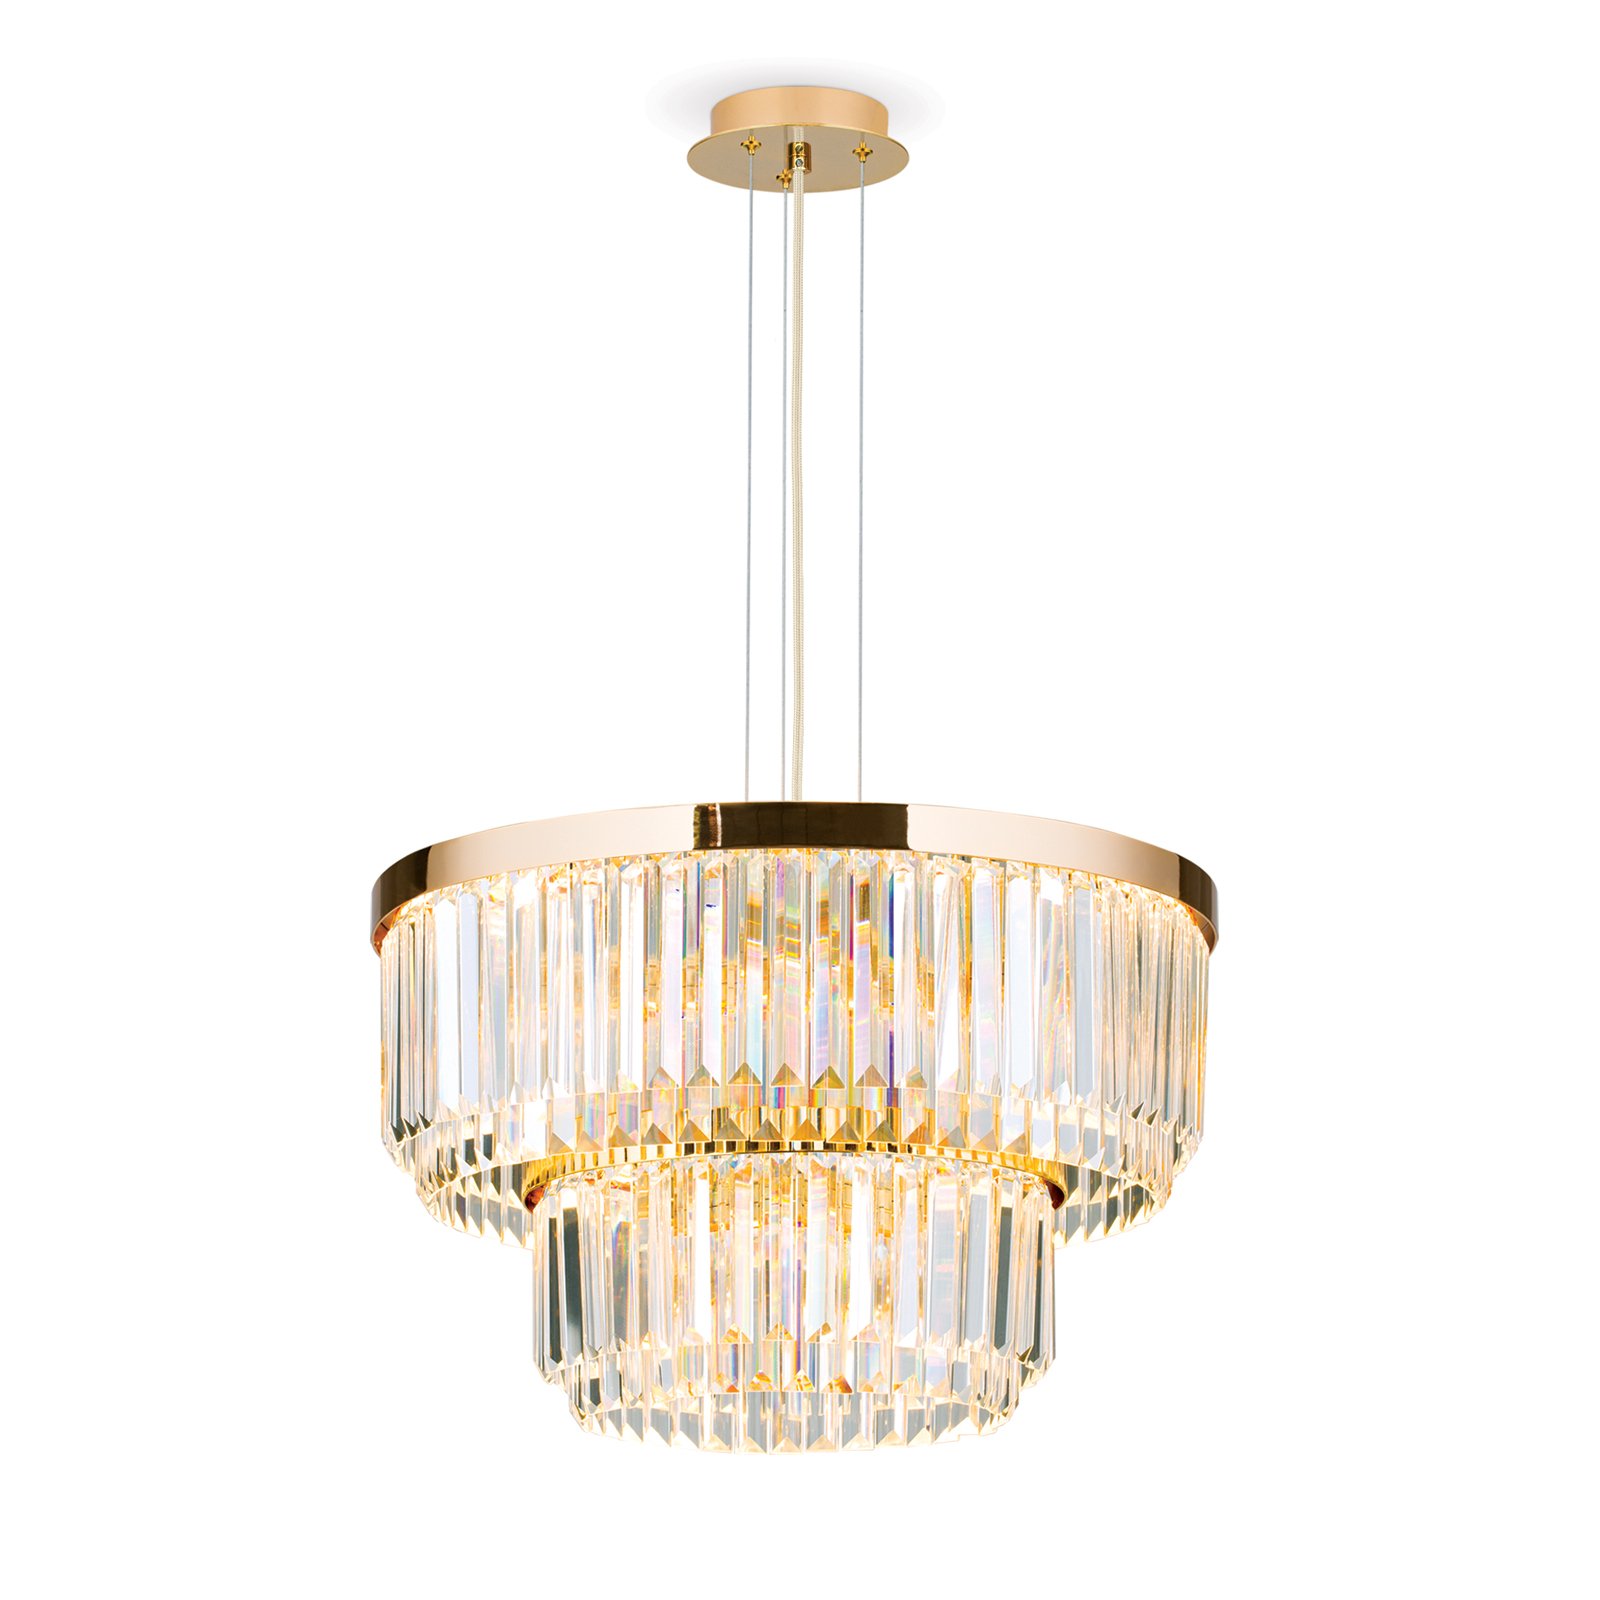 LED hanglamp Prism, rond, Ø 55 cm, goud